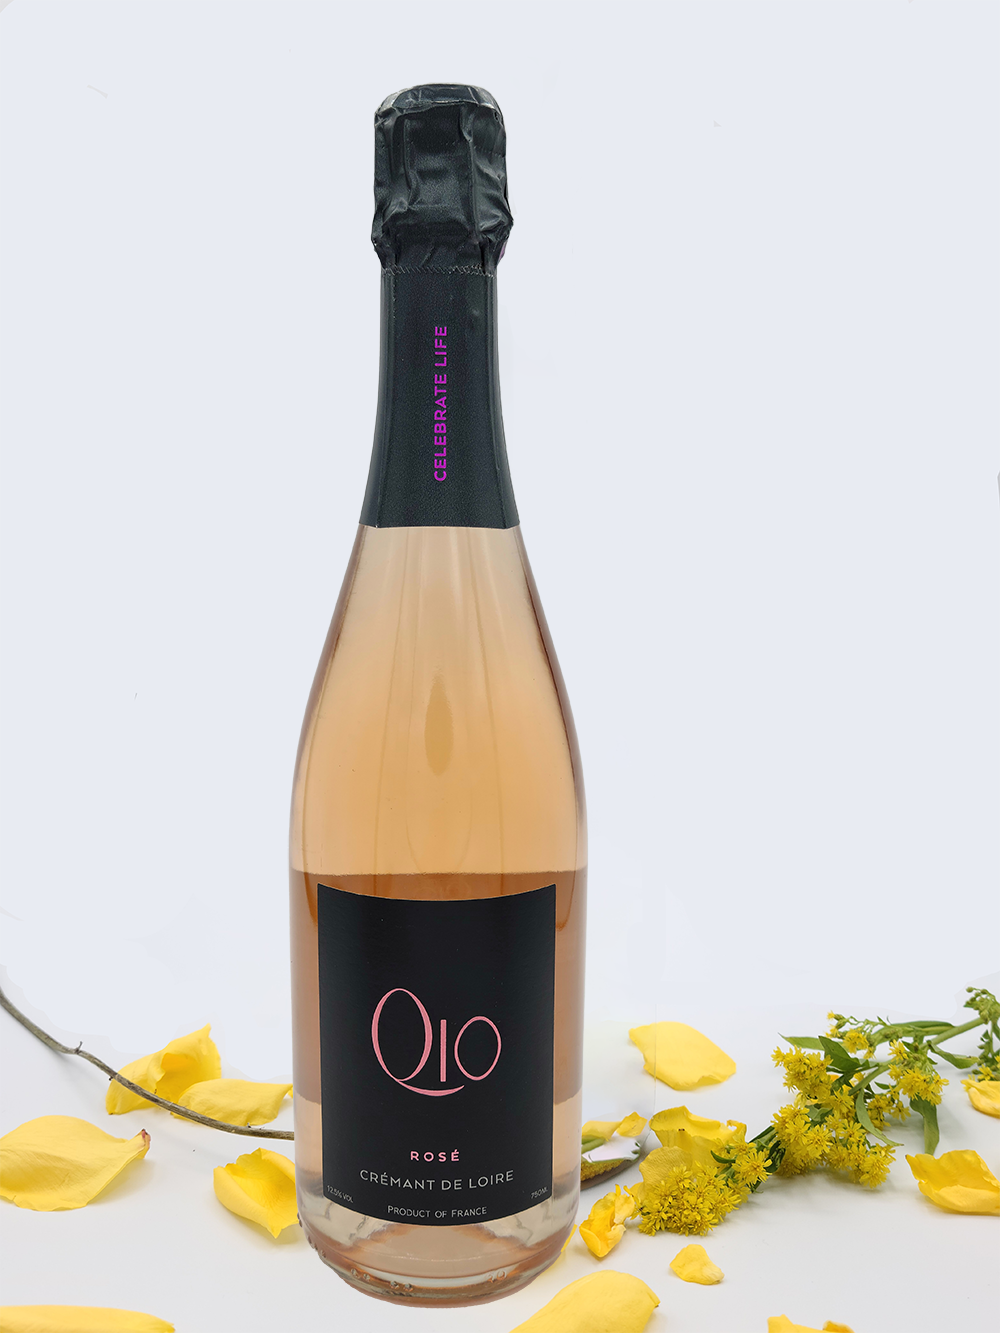 Q10 Crémant de Loire Rosé